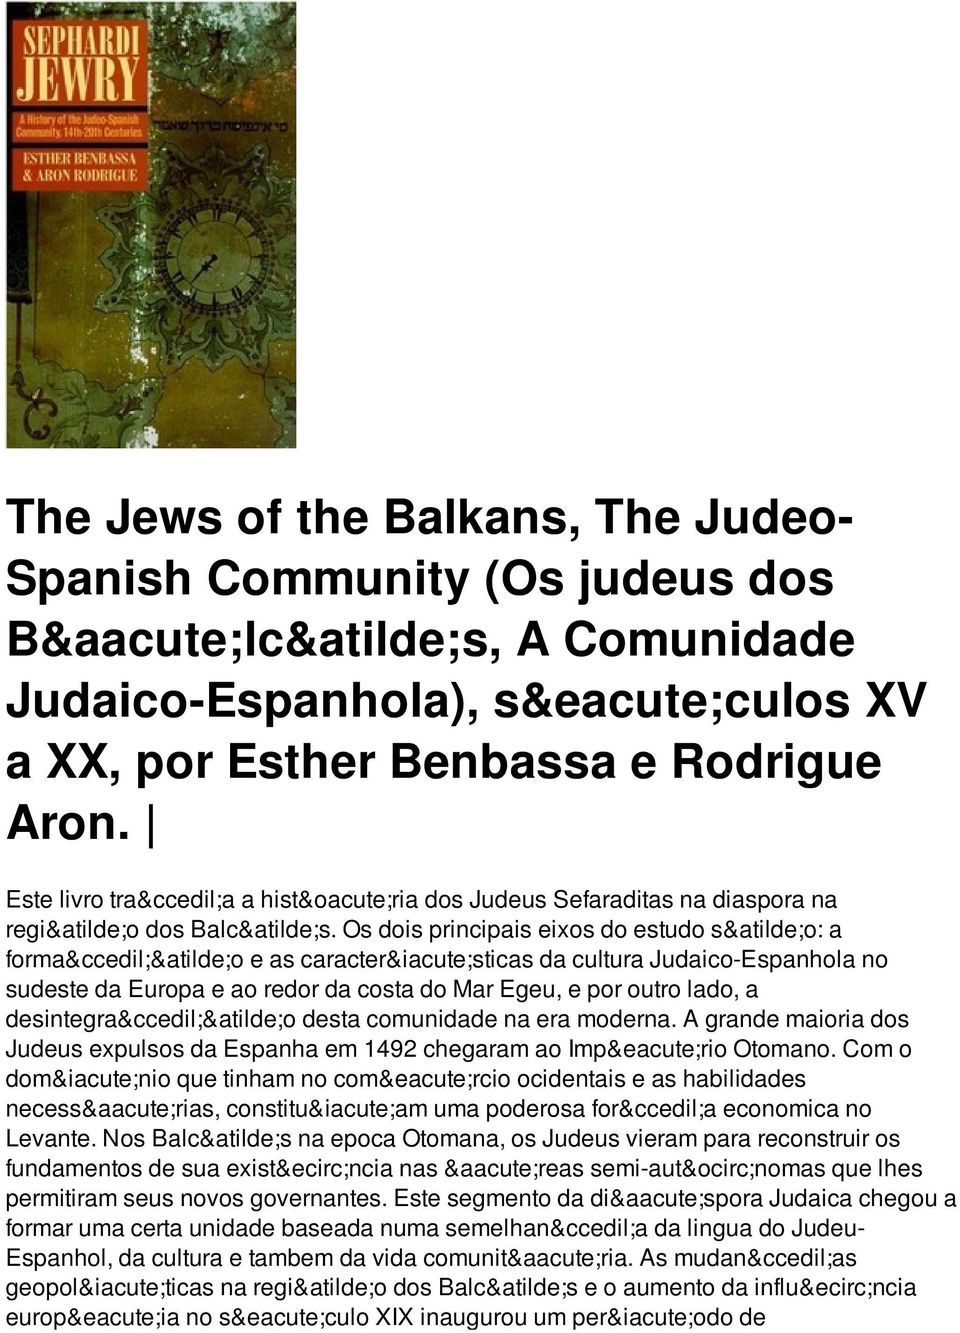 Os dois principais eixos do estudo são: a formação e as características da cultura Judaico-Espanhola no sudeste da Europa e ao redor da costa do Mar Egeu, e por outro lado, a desintegração desta